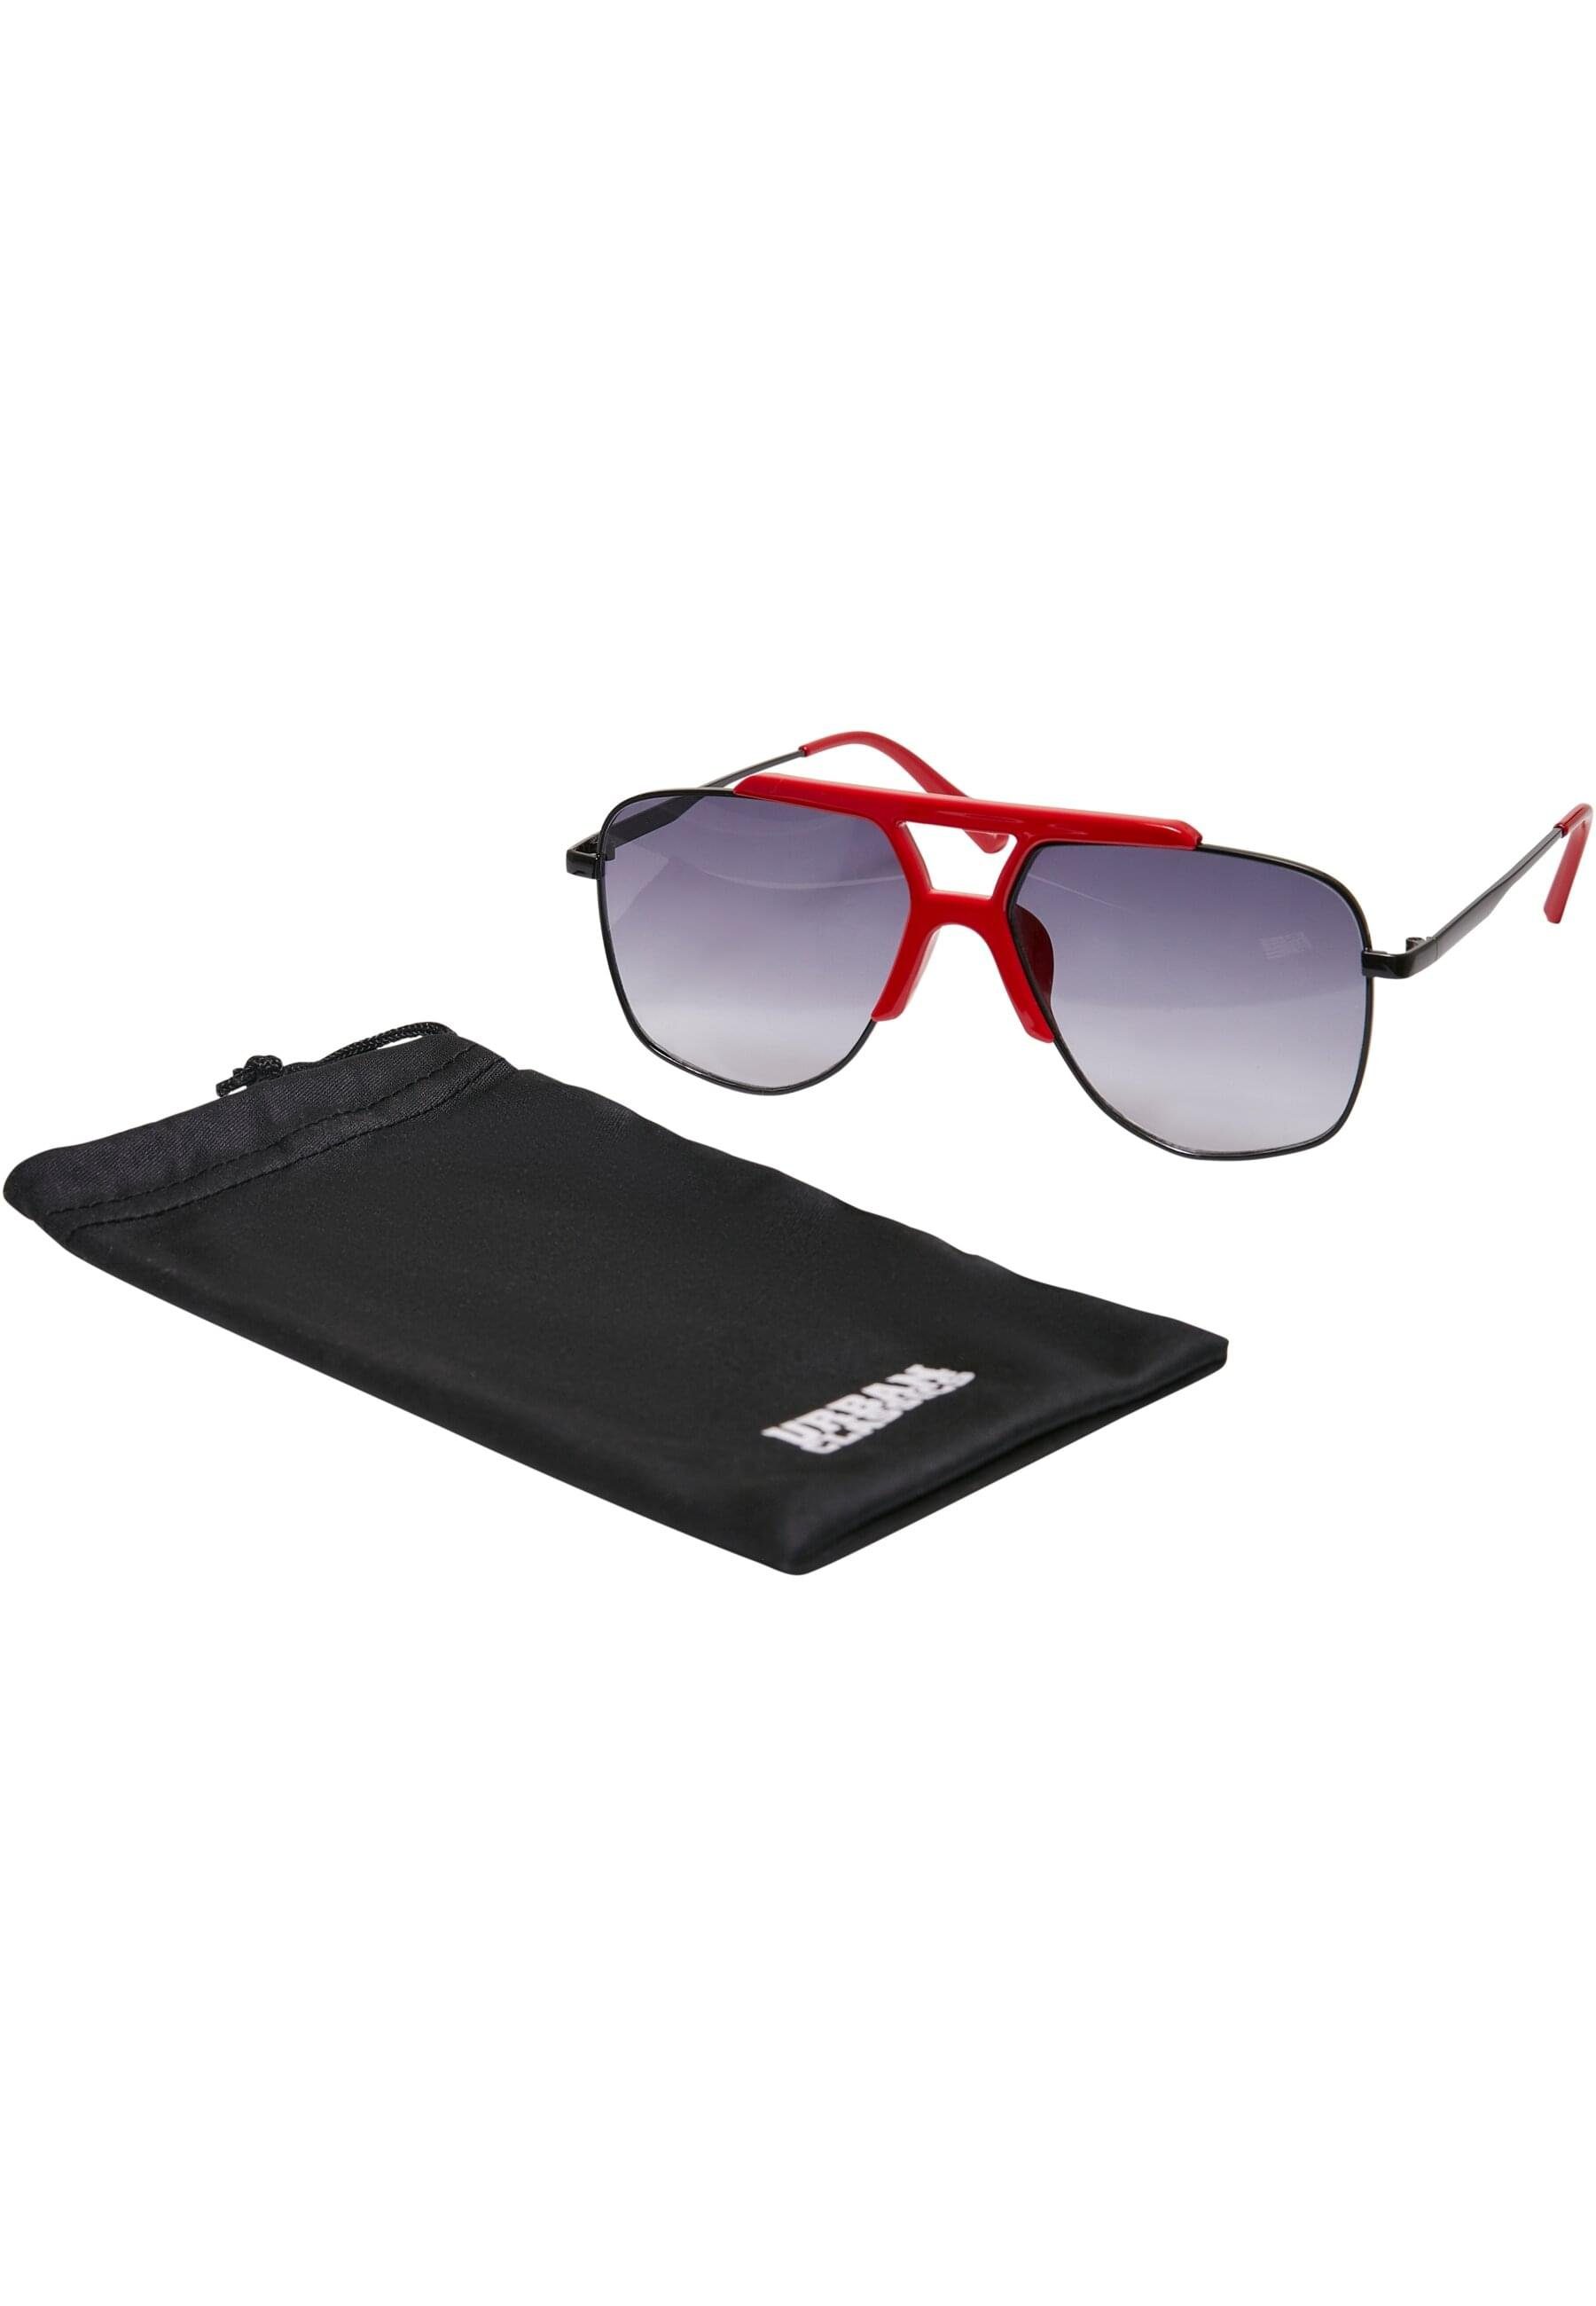 URBAN CLASSICS Sonnenbrille Unisex Saint Tropez hugered/black Sunglasses